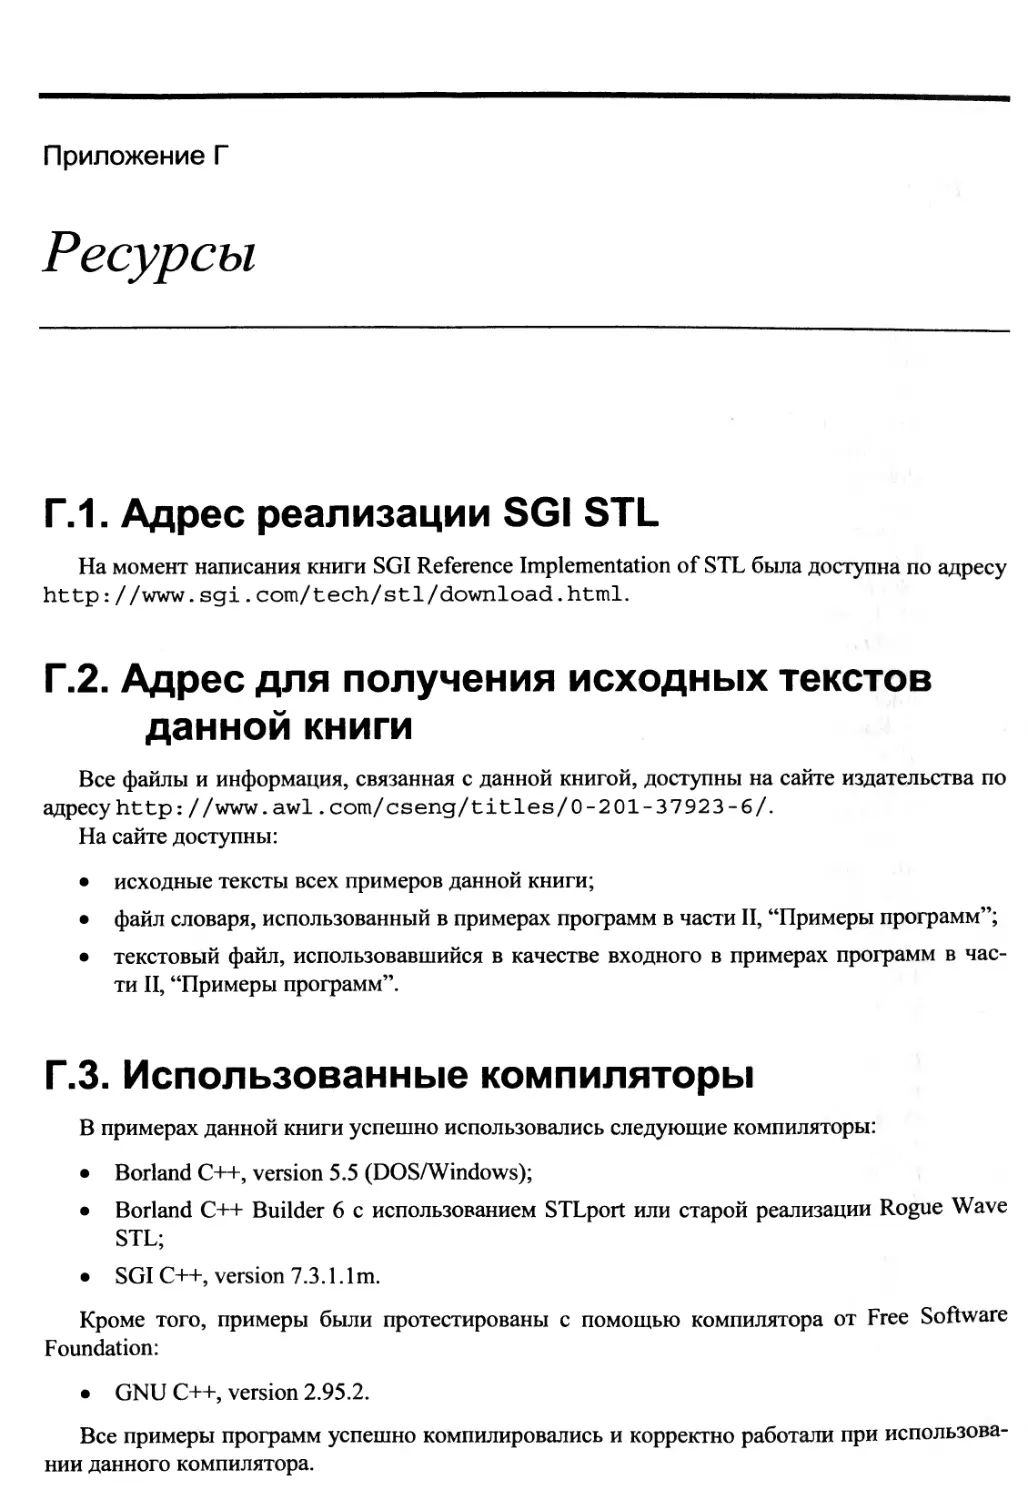 Приложение Г. Ресурсы
Г.2. Адрес для получения исходных текстов данной книги
Г.3. Использованные компиляторы